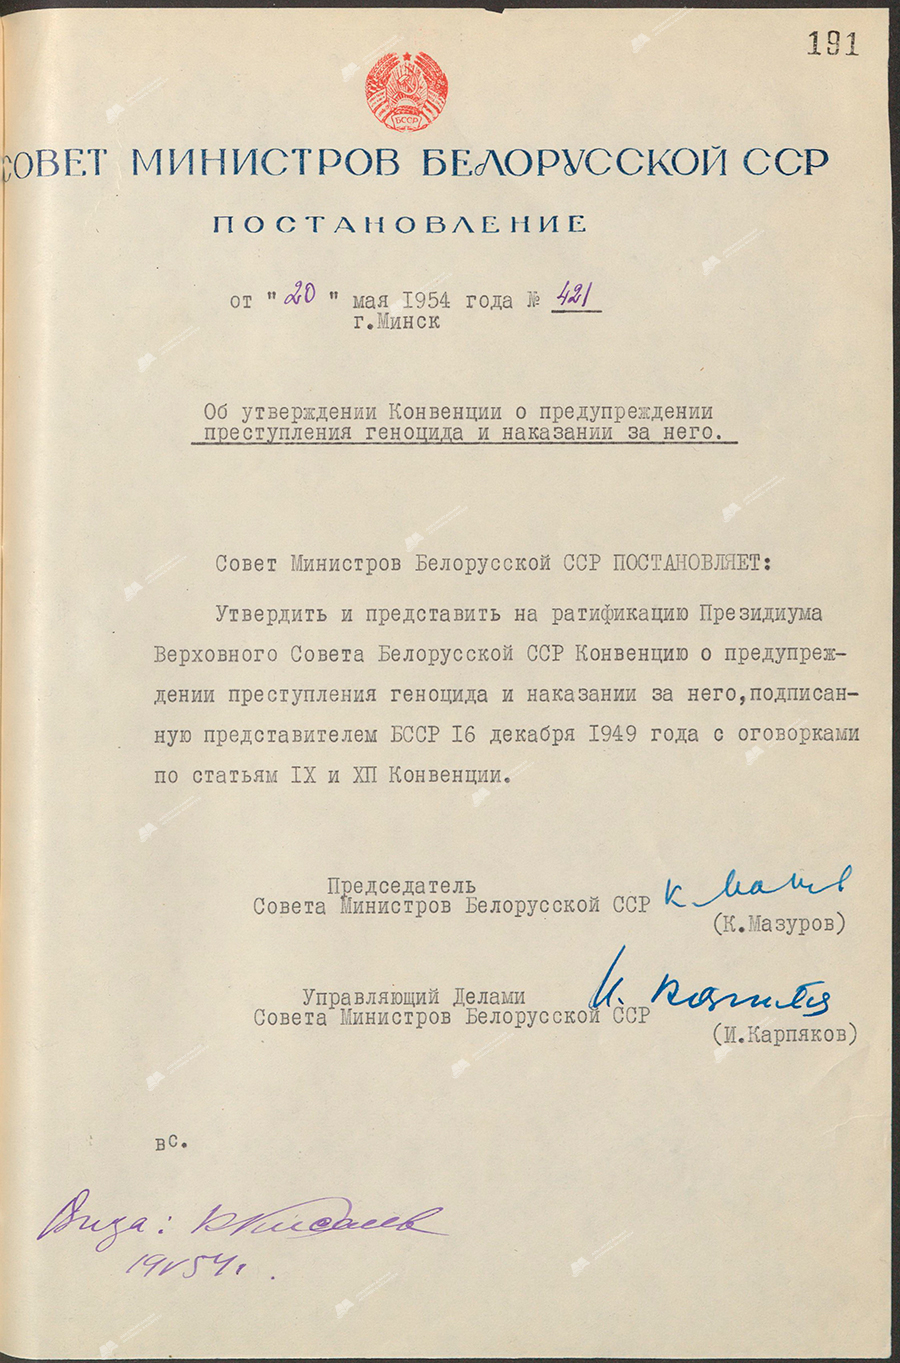 Beschluss Nr. 421 des Ministerrats der Weißrussischen SSR «Über die Genehmigung des Übereinkommens zur Verhütung und Bestrafung des Völkermordverbrechens»-с. 0